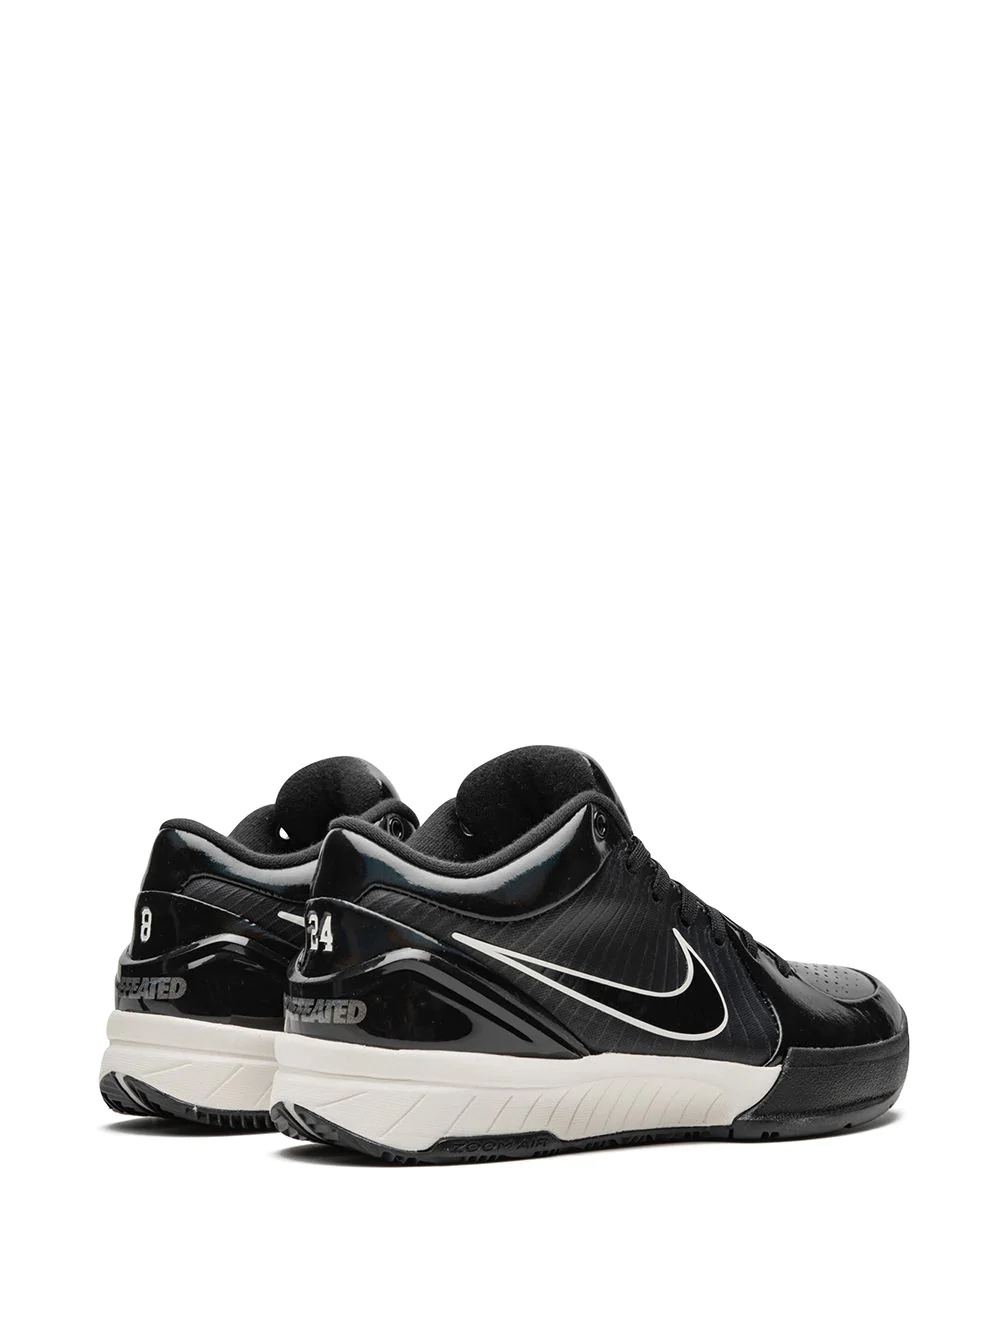 Nike Kobe 4 Protro UNDFTD PE sneakers | REVERSIBLE